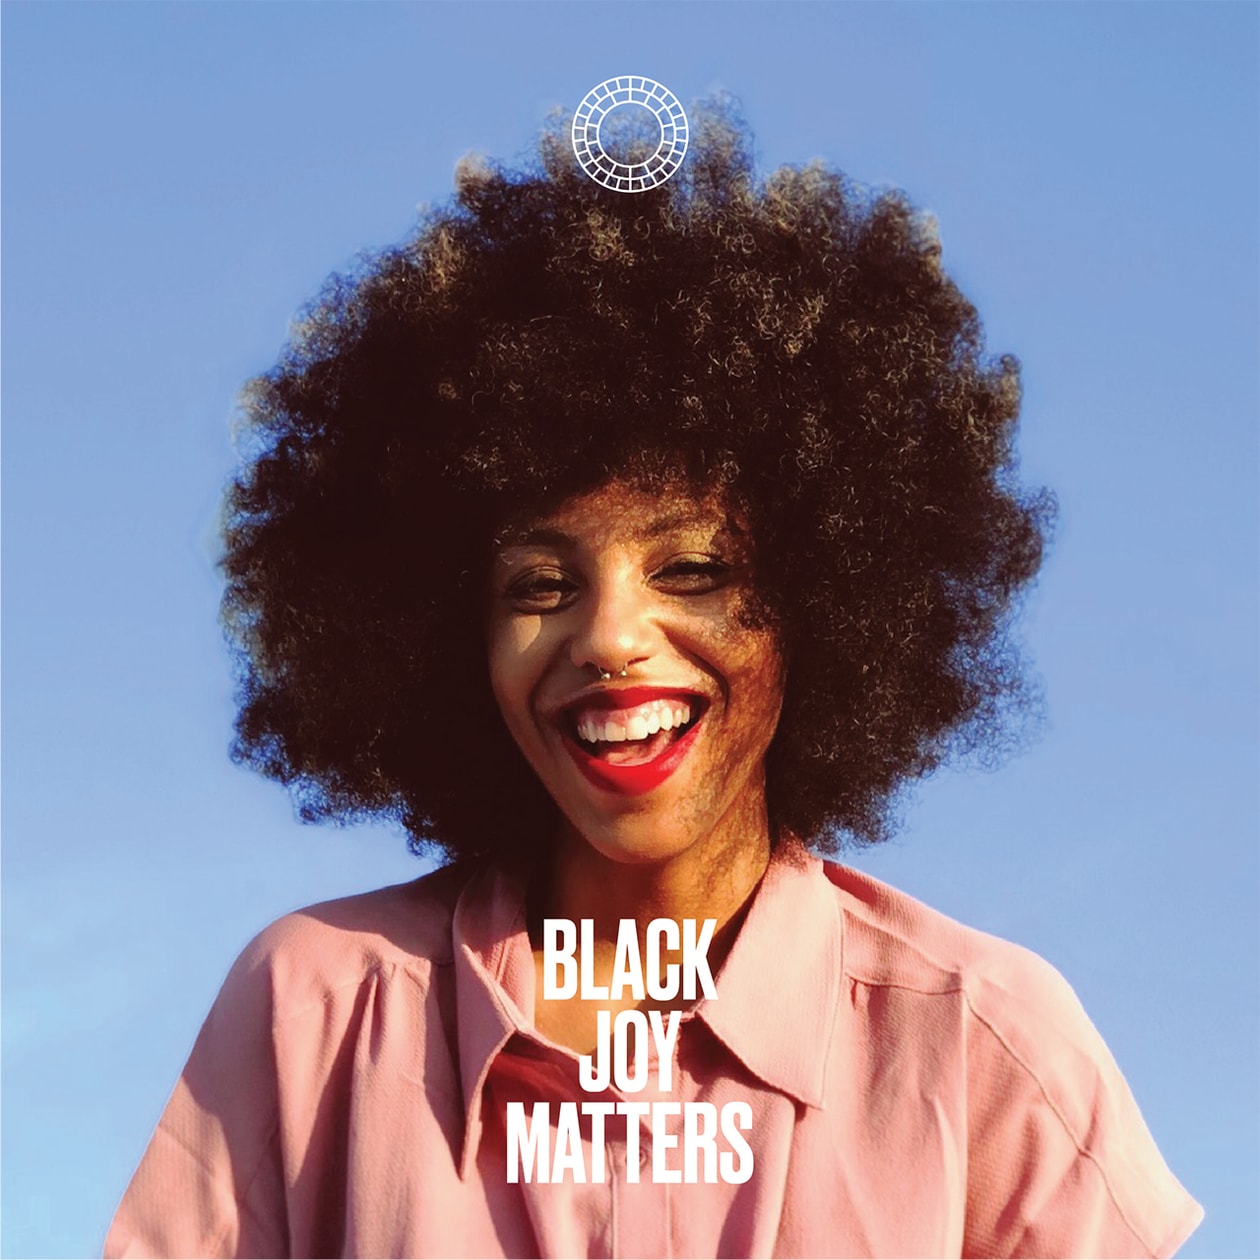 VSCO Black Joy Matters Initiative Photo Social Media App